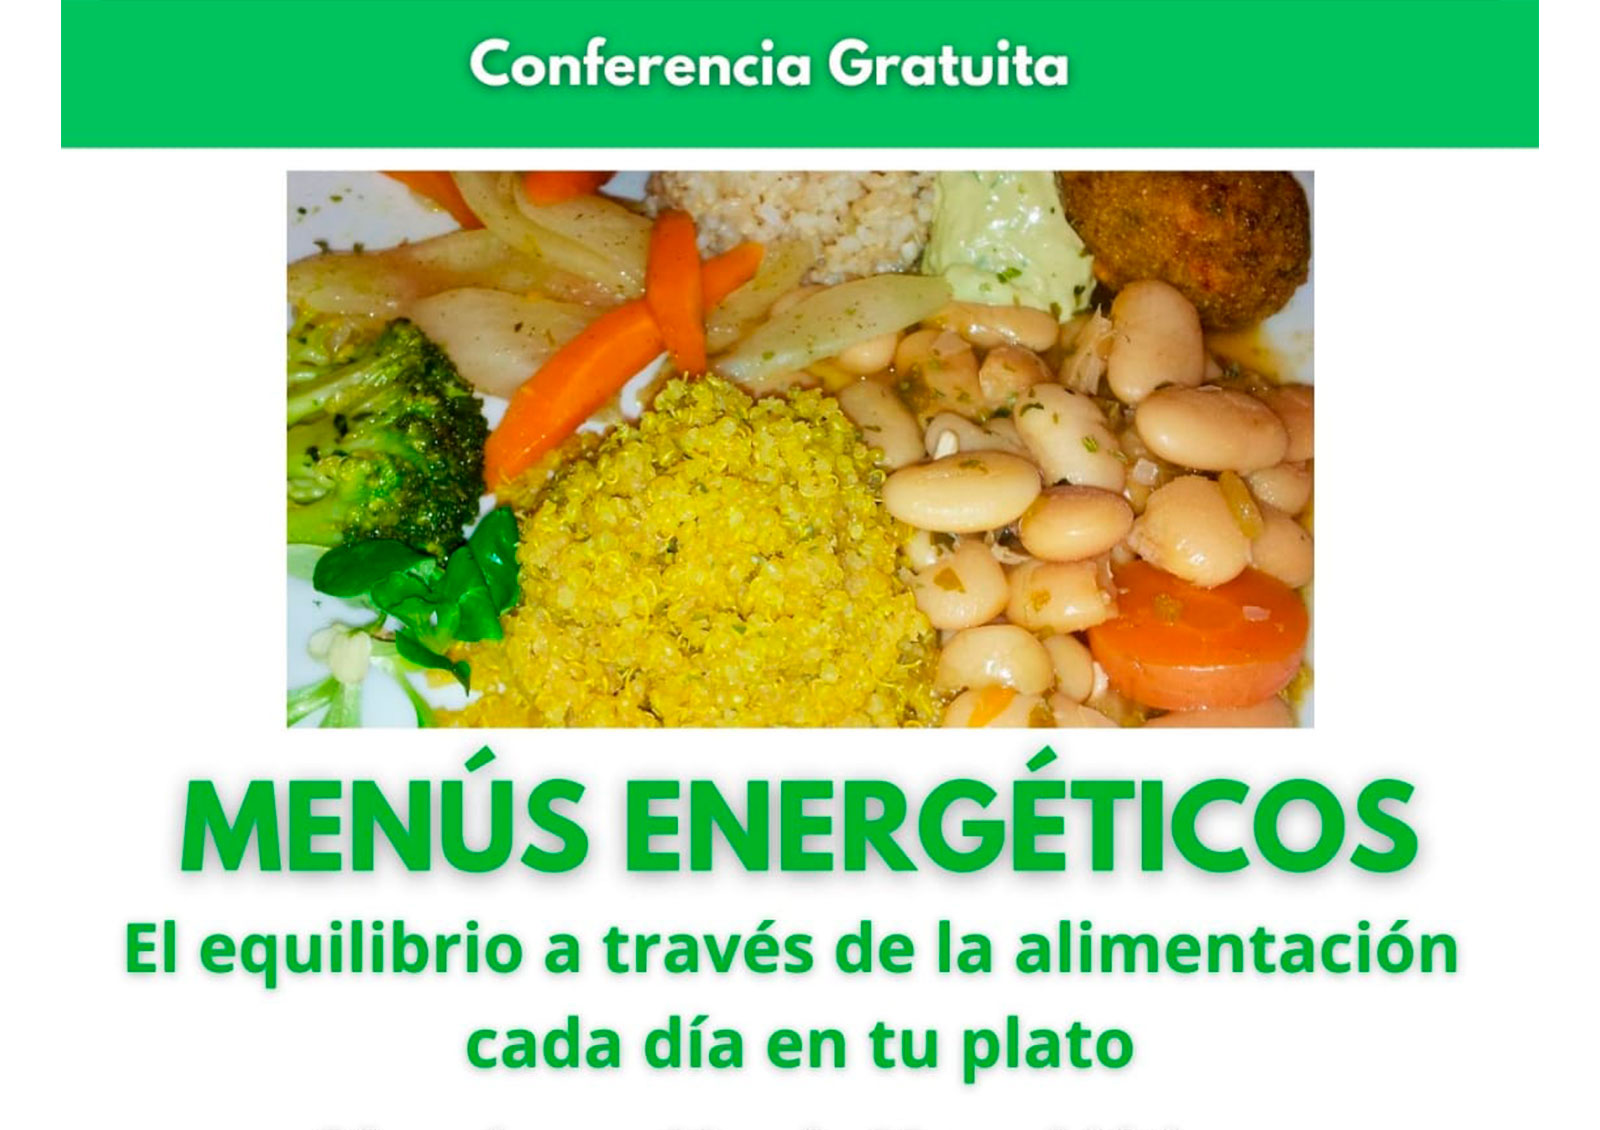 Conferencia- Menús Energéticos. El equilibrio a través de la alimentación cada día en tu plato.